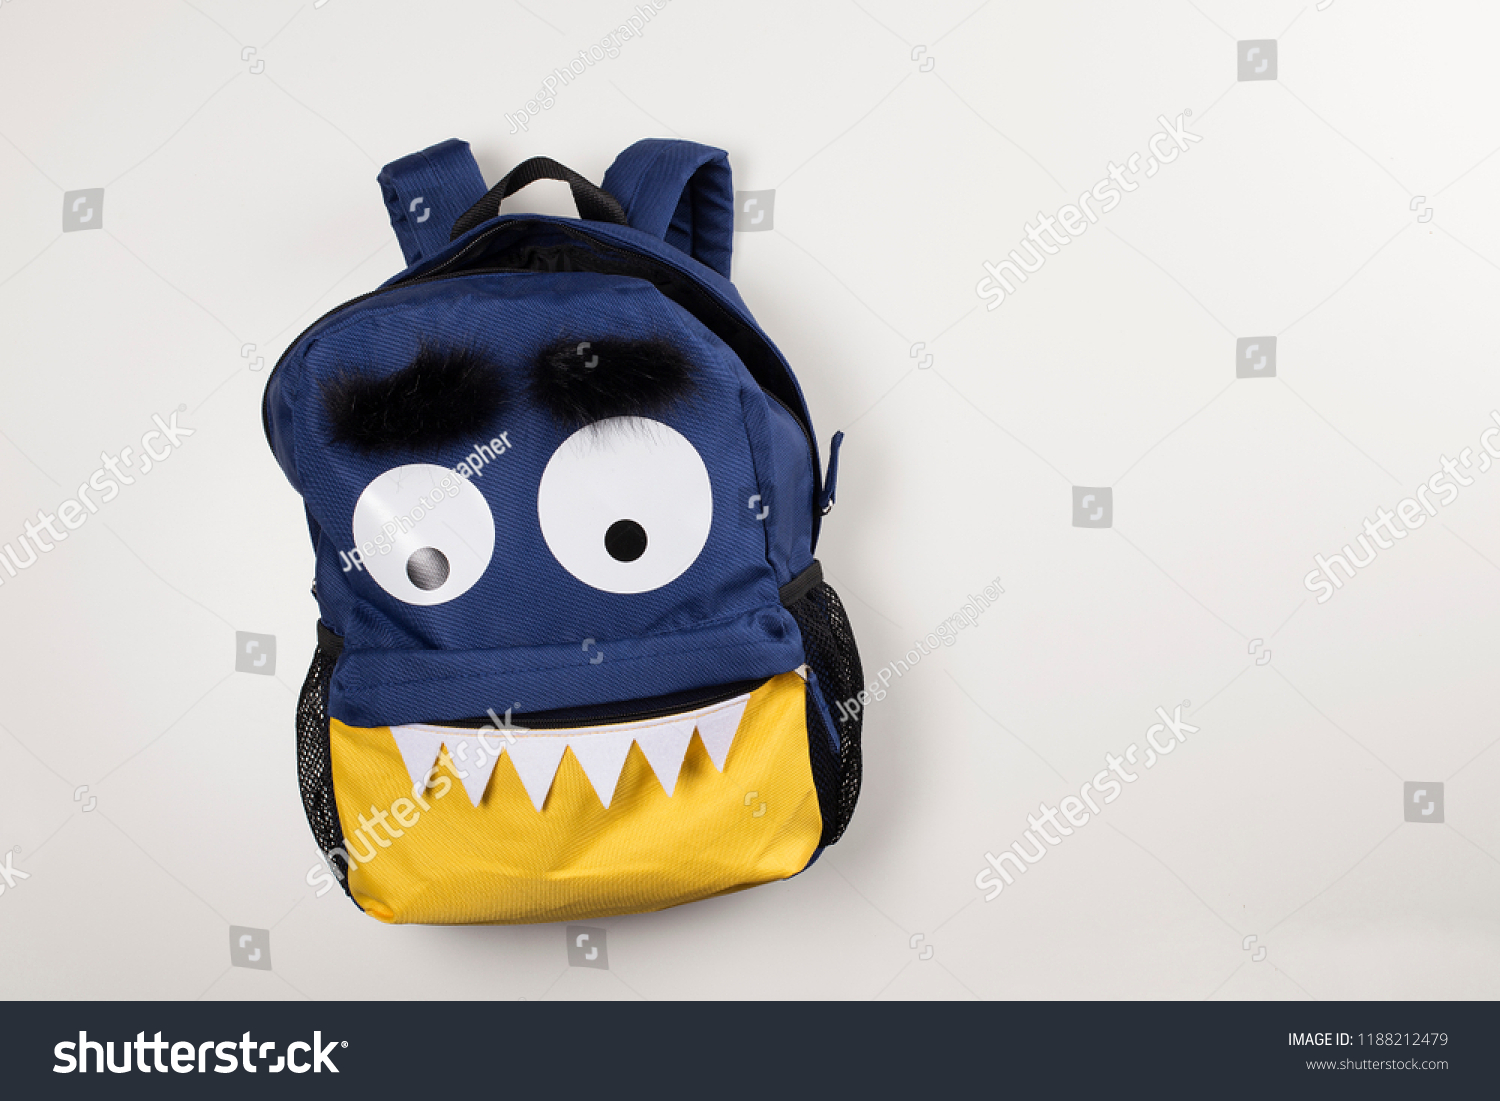 monster face backpack